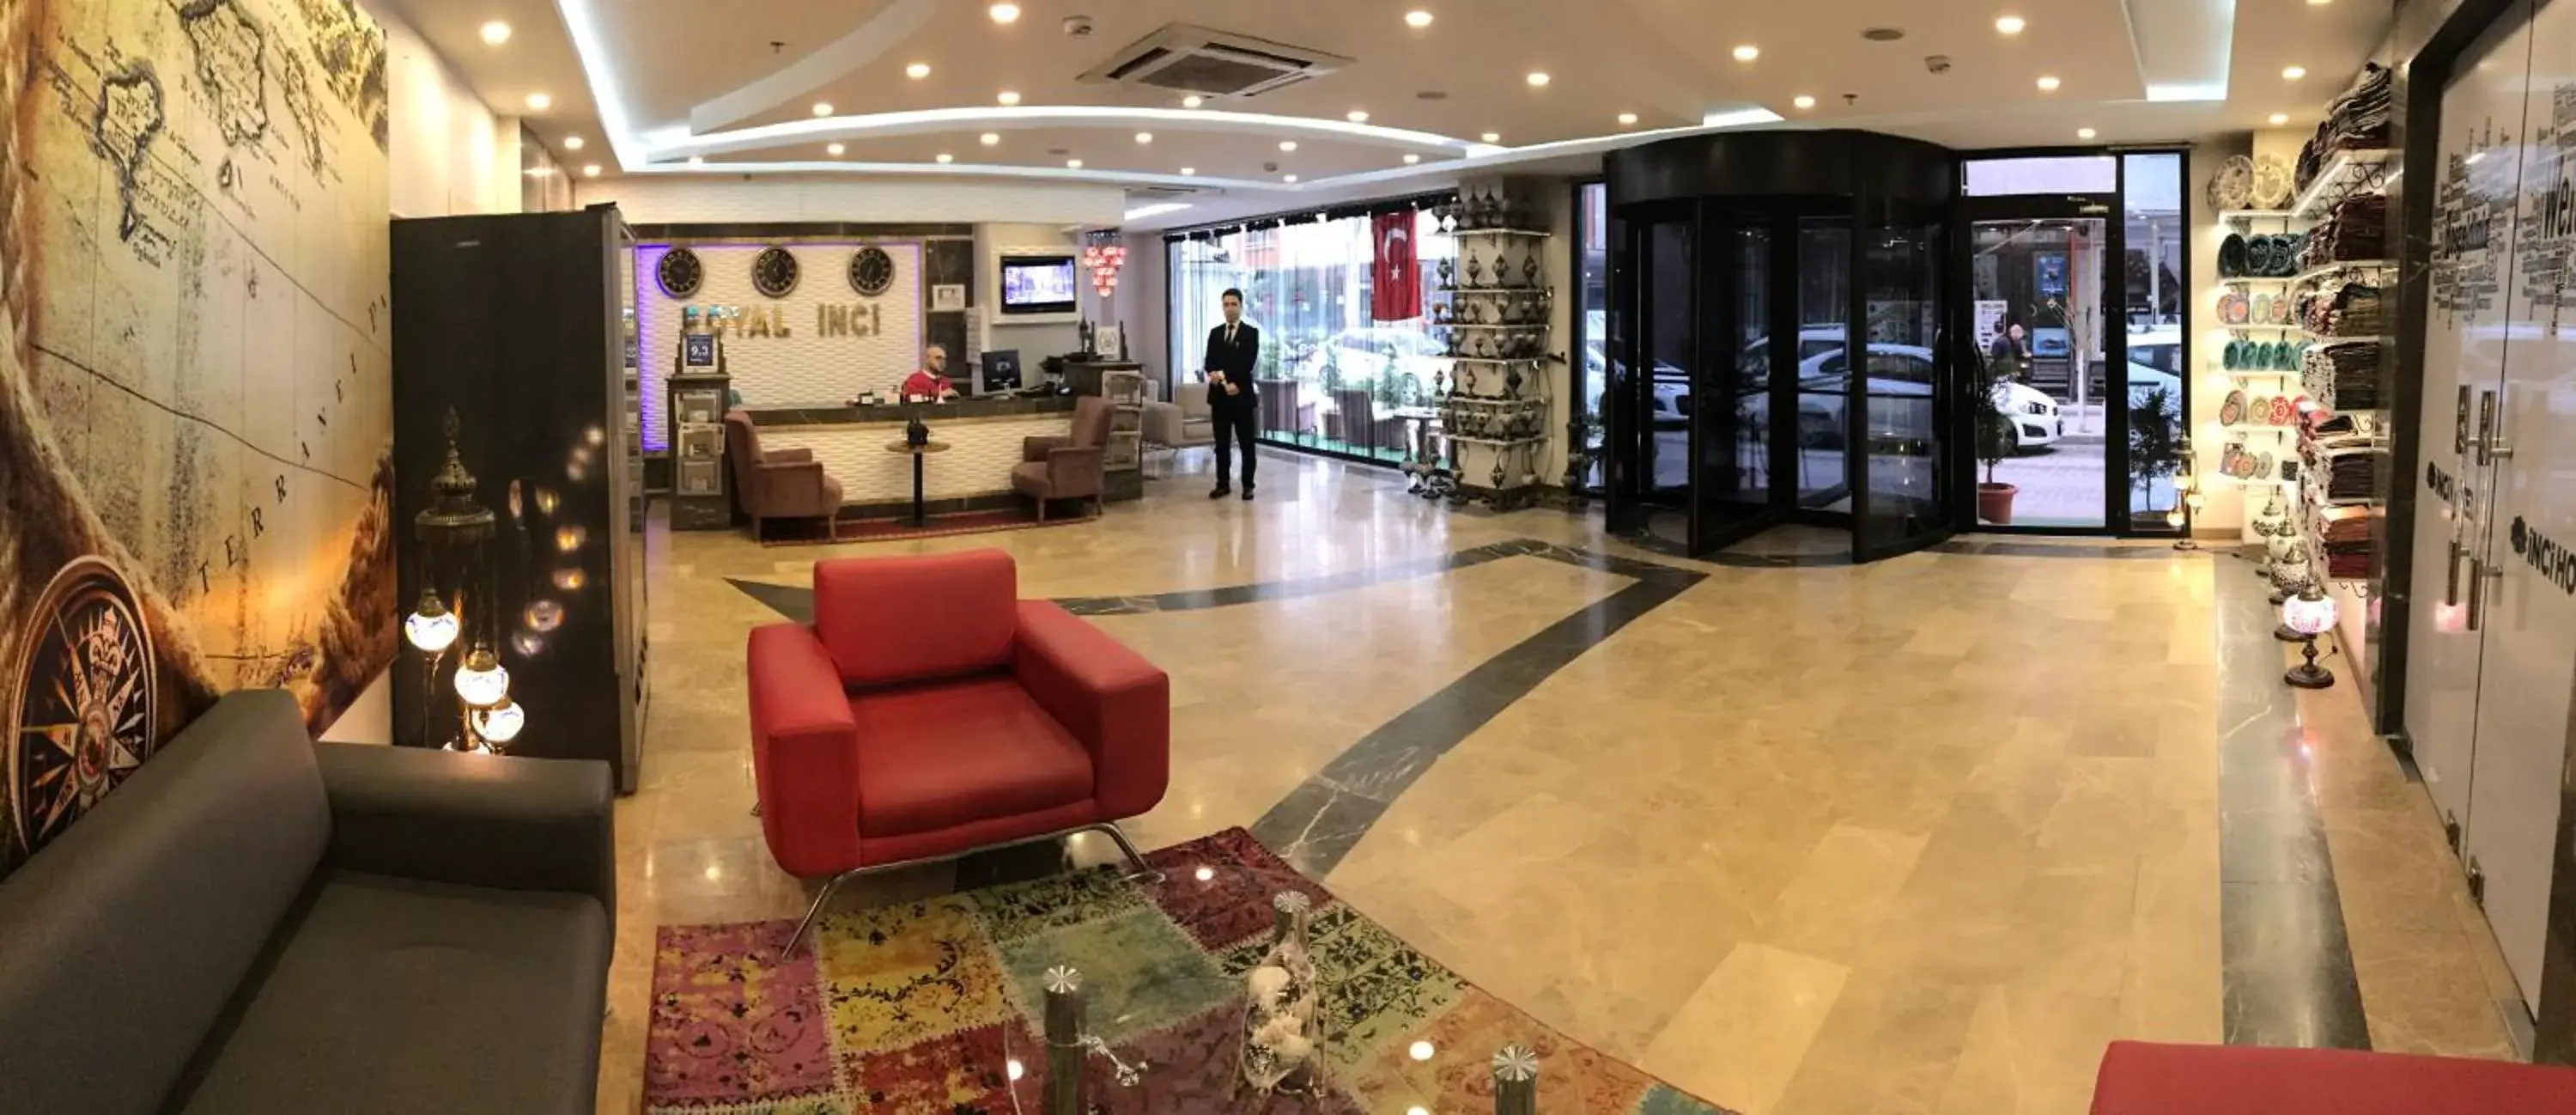 Lobby or reception, Lobby/Reception in Royal İnci Spa Hotel